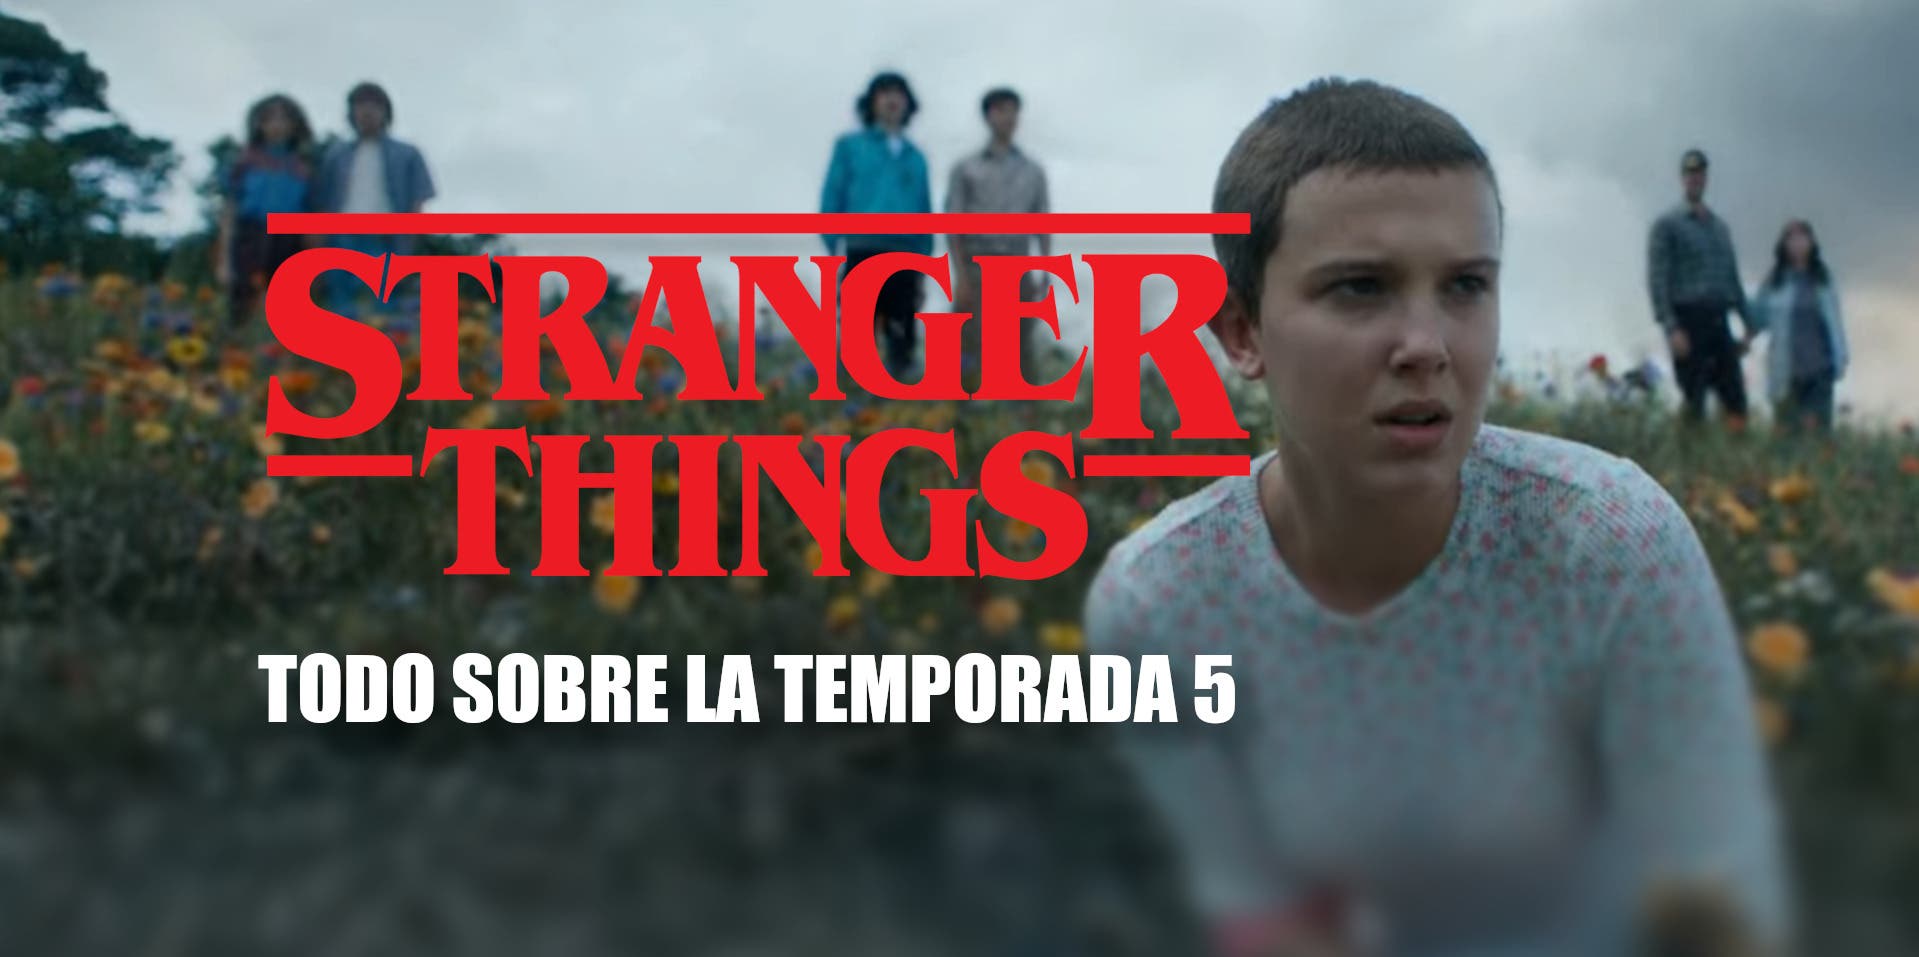 Cuándo se estrena el volumen dos de Stranger Things temporada 4 en España,  número de capítulos y su duración